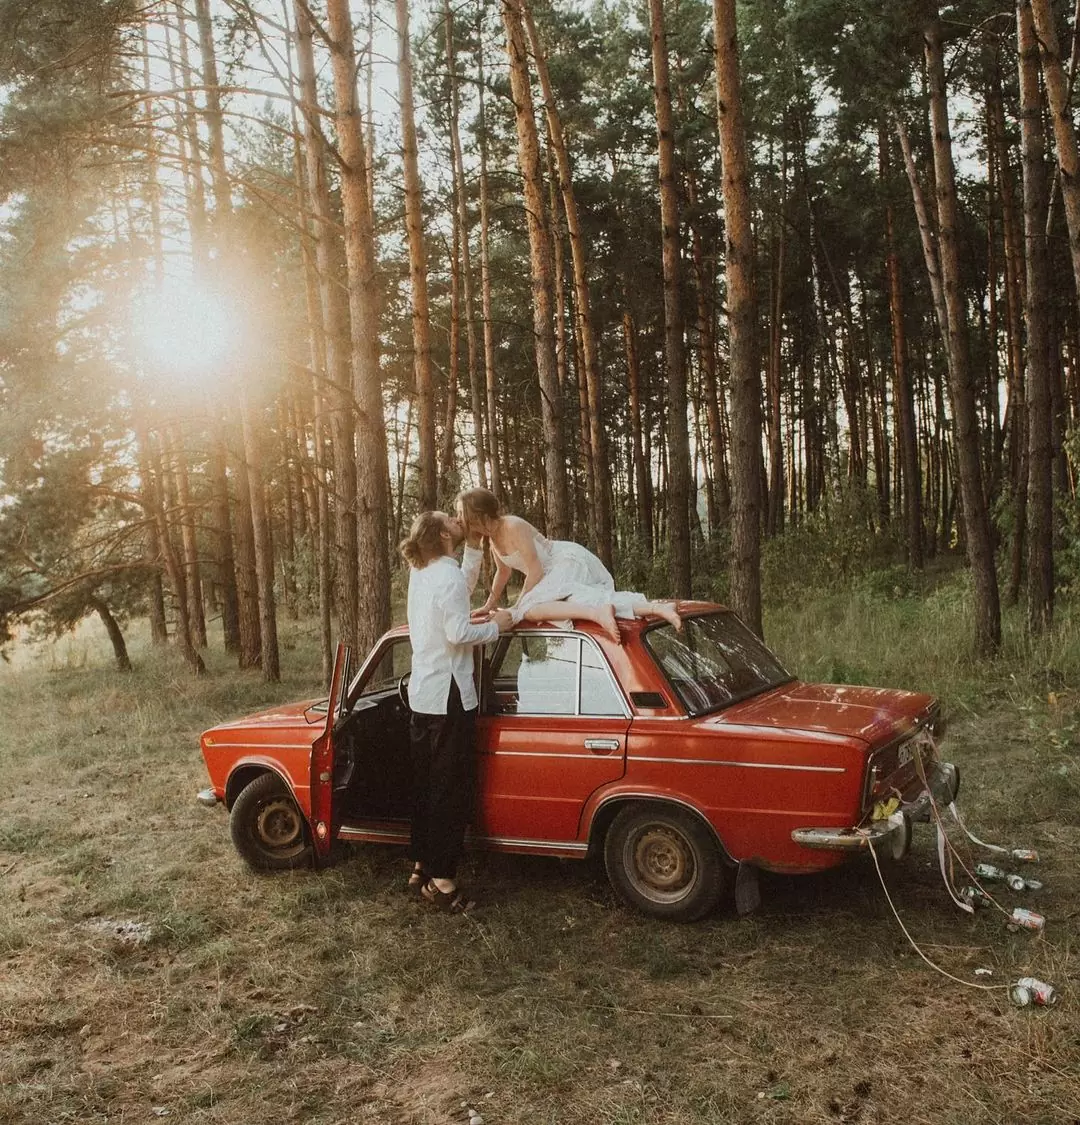 Фото. Жениха и невеста на фоне красной ретро машины "Lada"